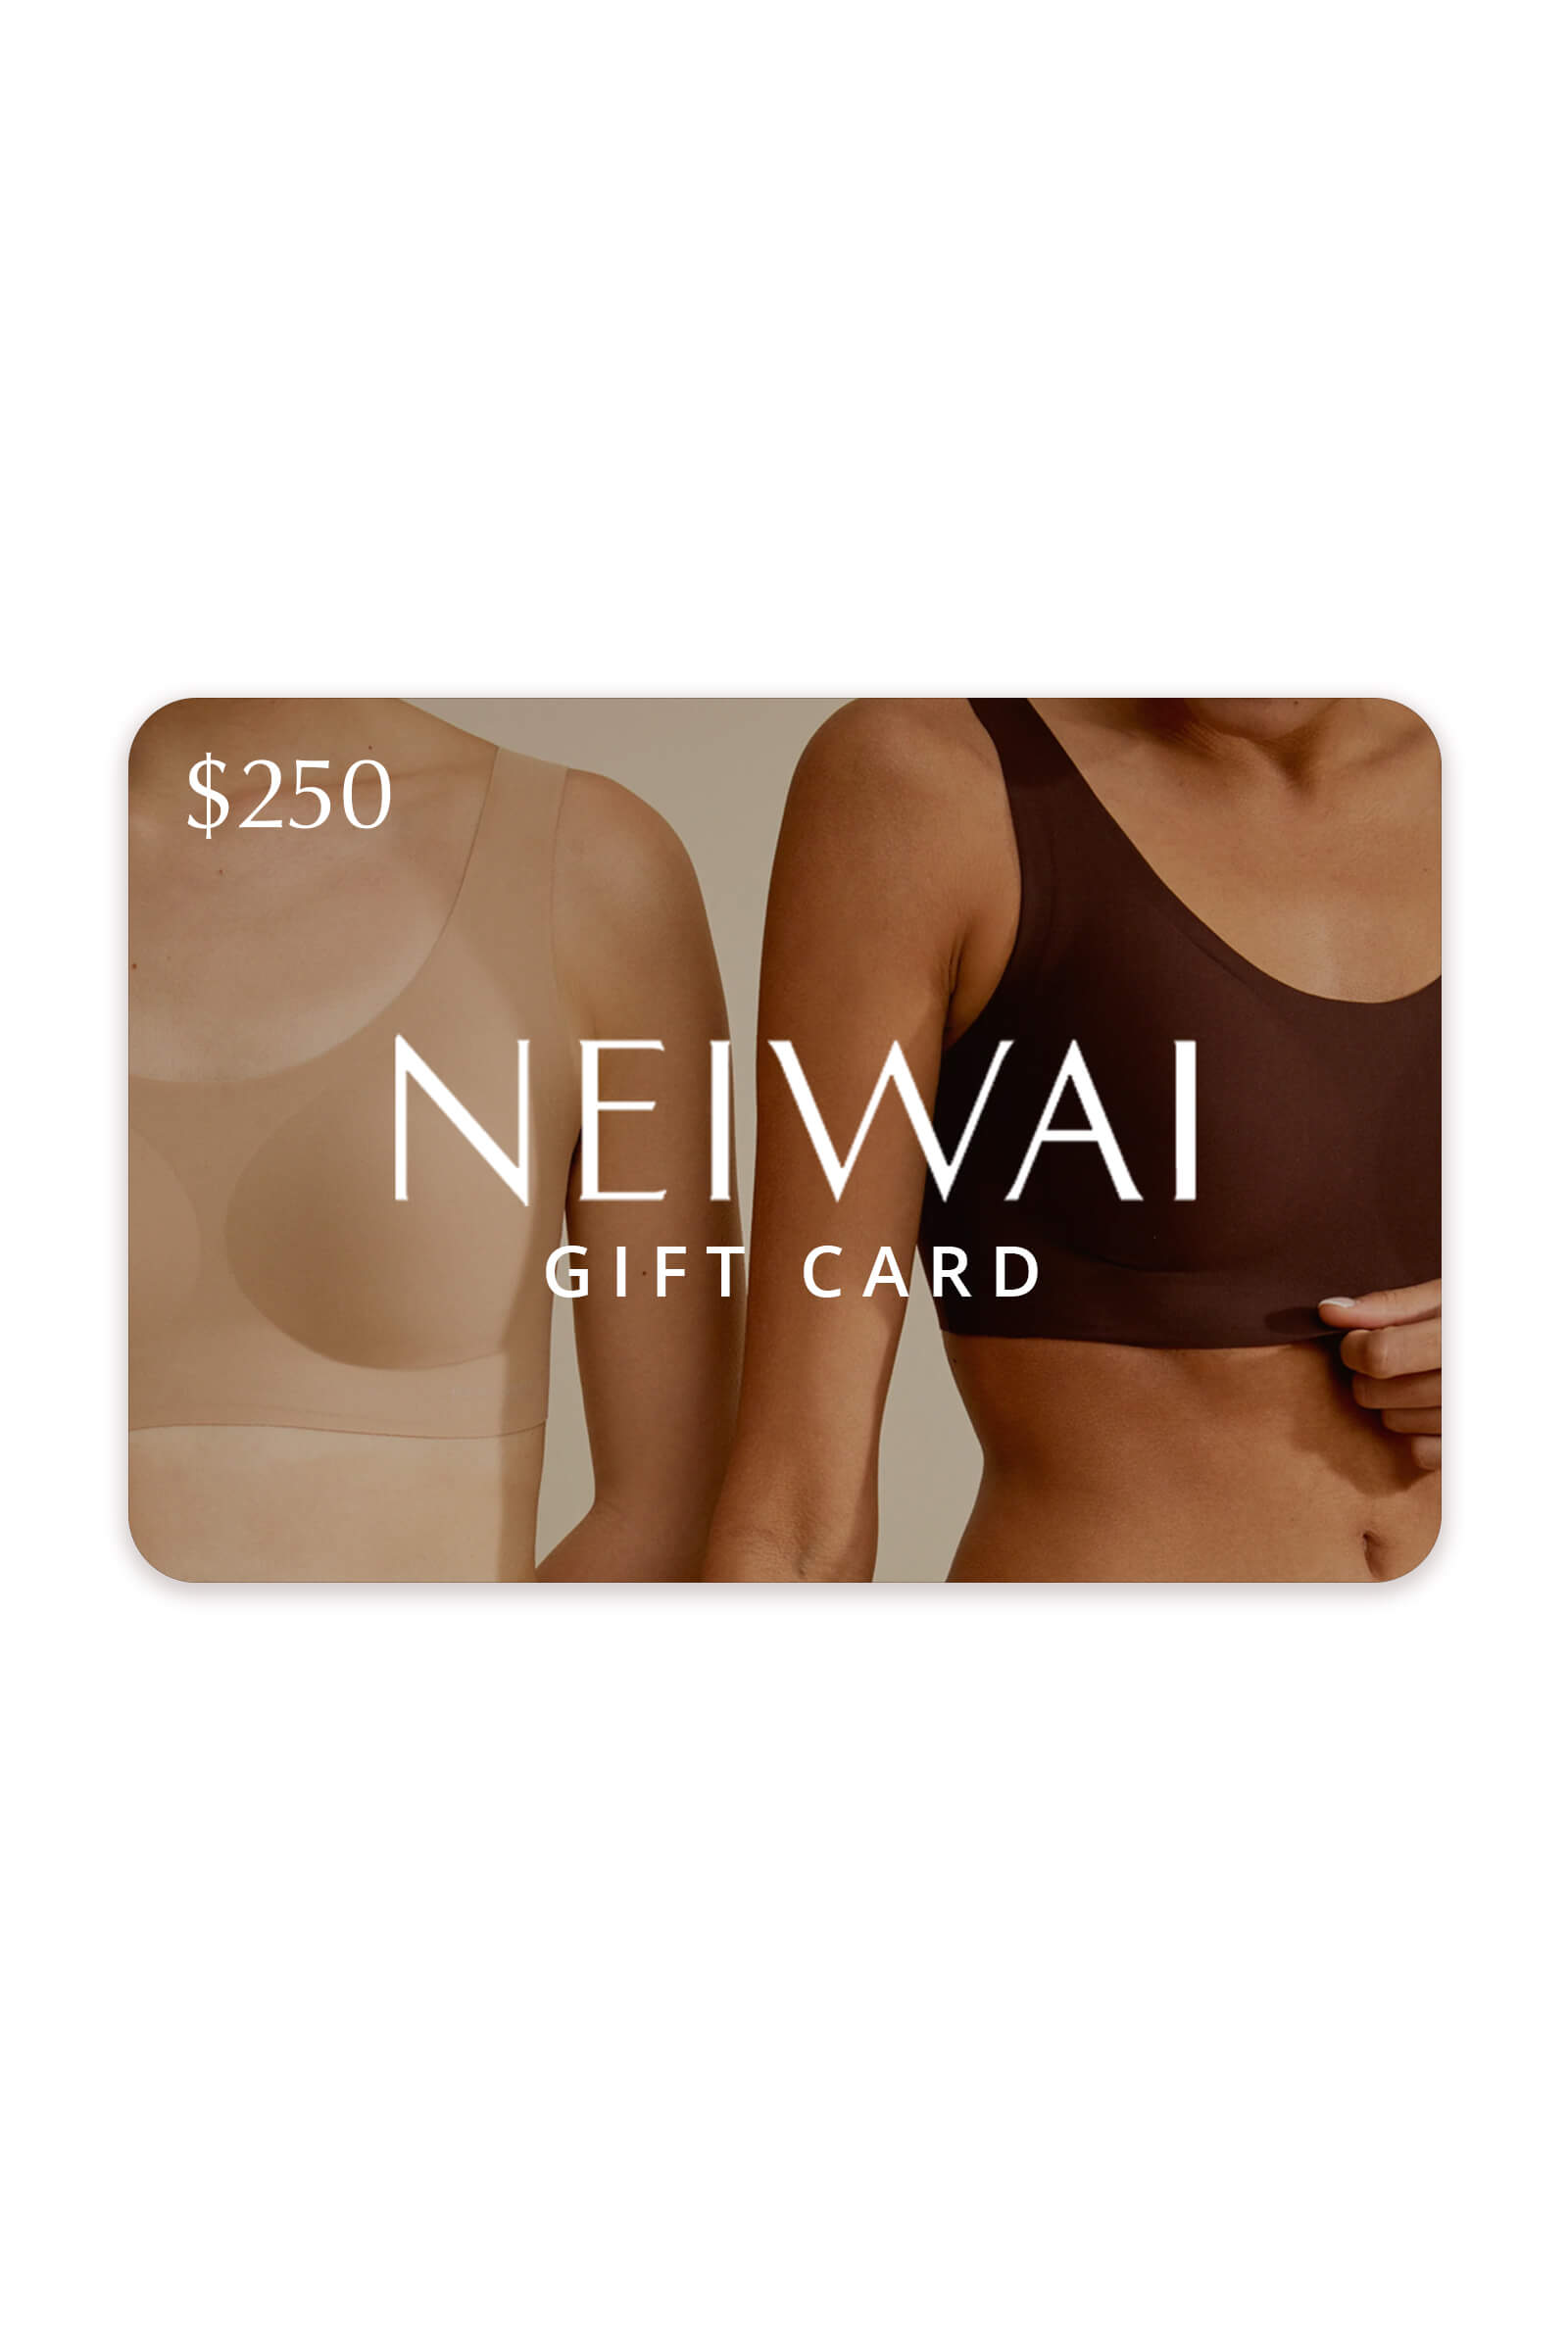 NEIWAI gift card $250